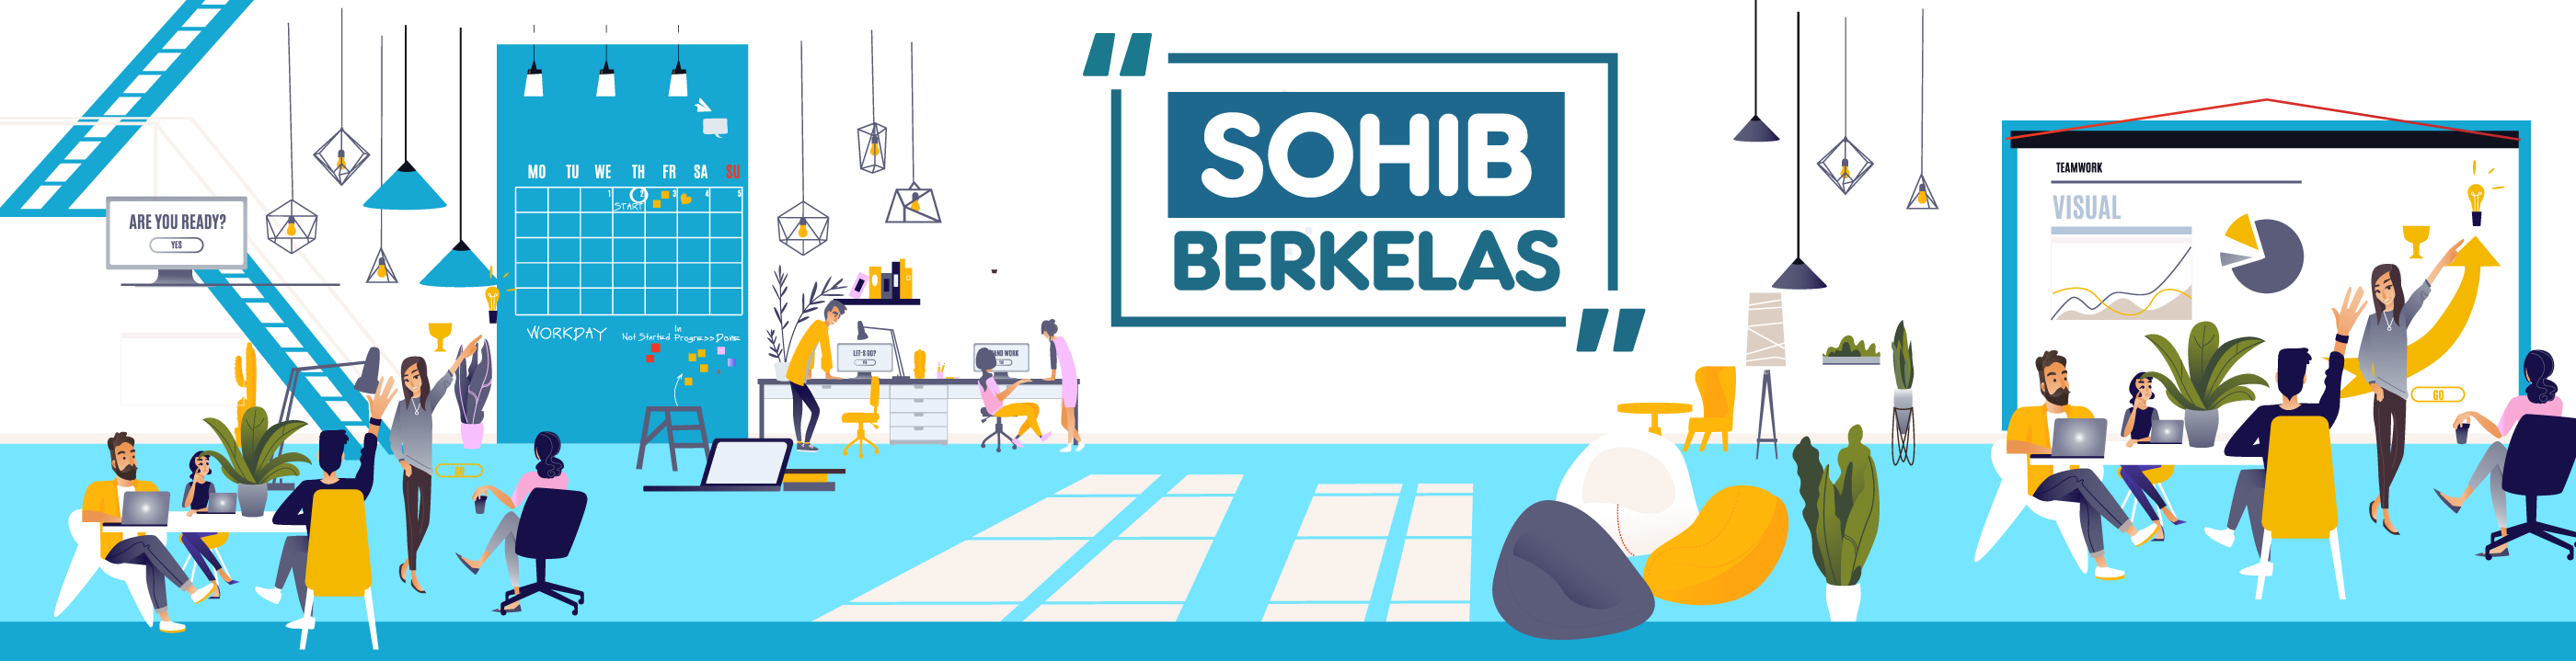 SohIB Berkelas Padang 2018_banner_1535444436_sohib_offline.png